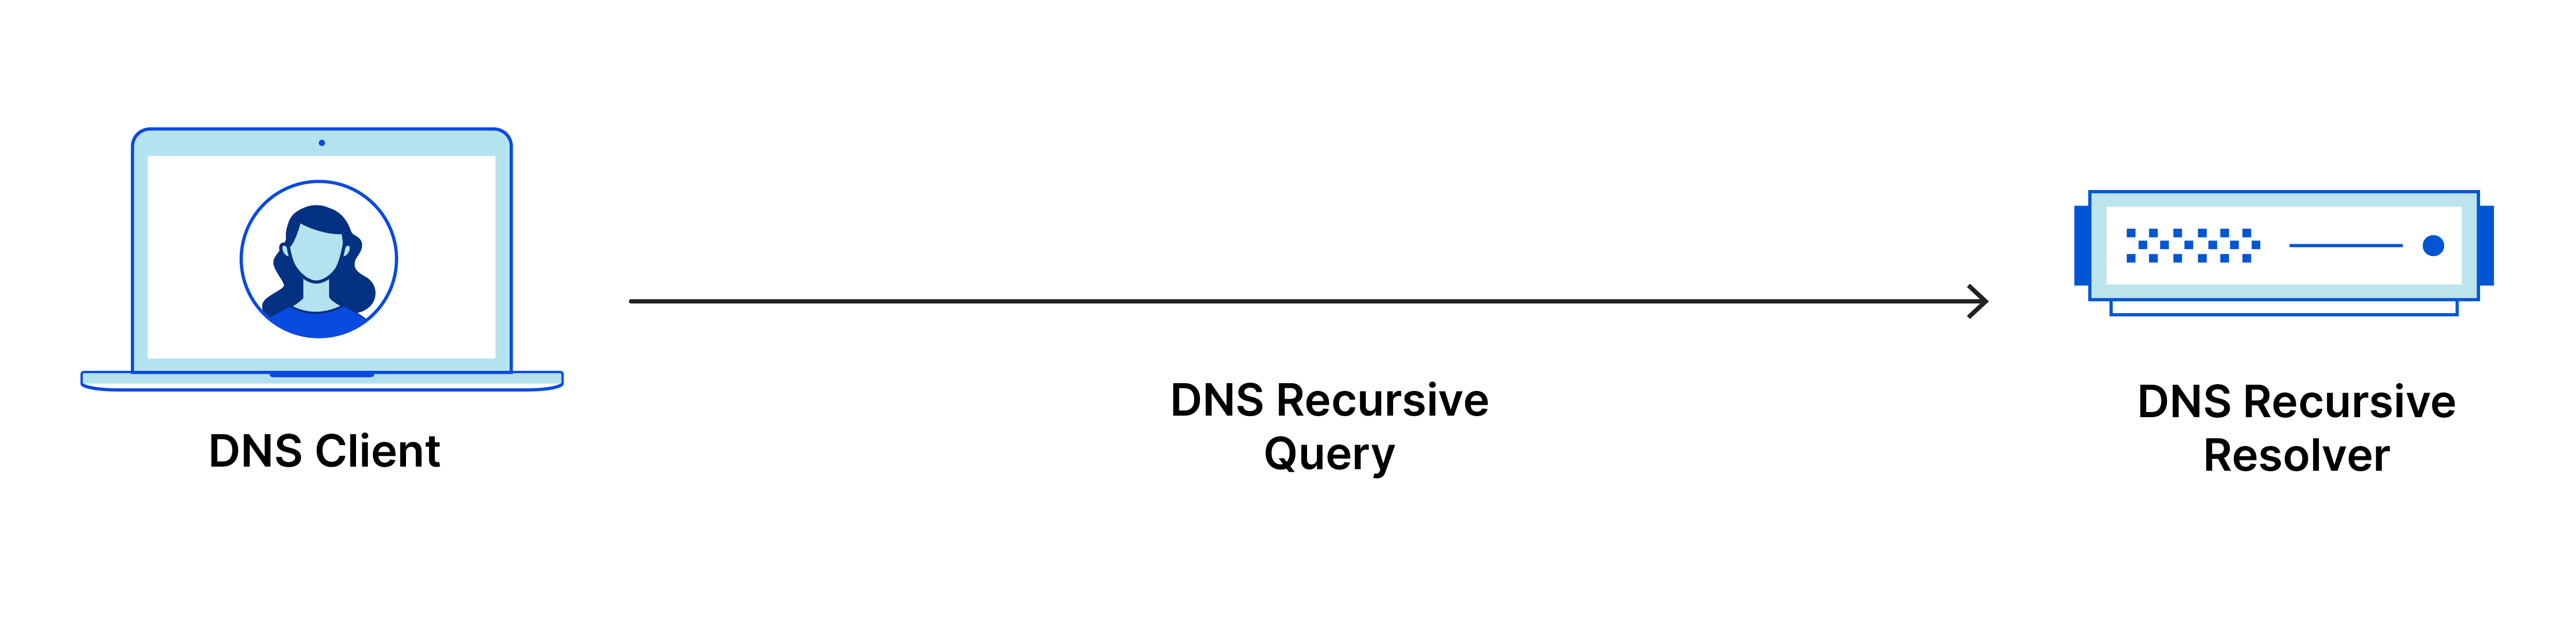 DNS recursive query goes from DNS client to DNS recursive resolver